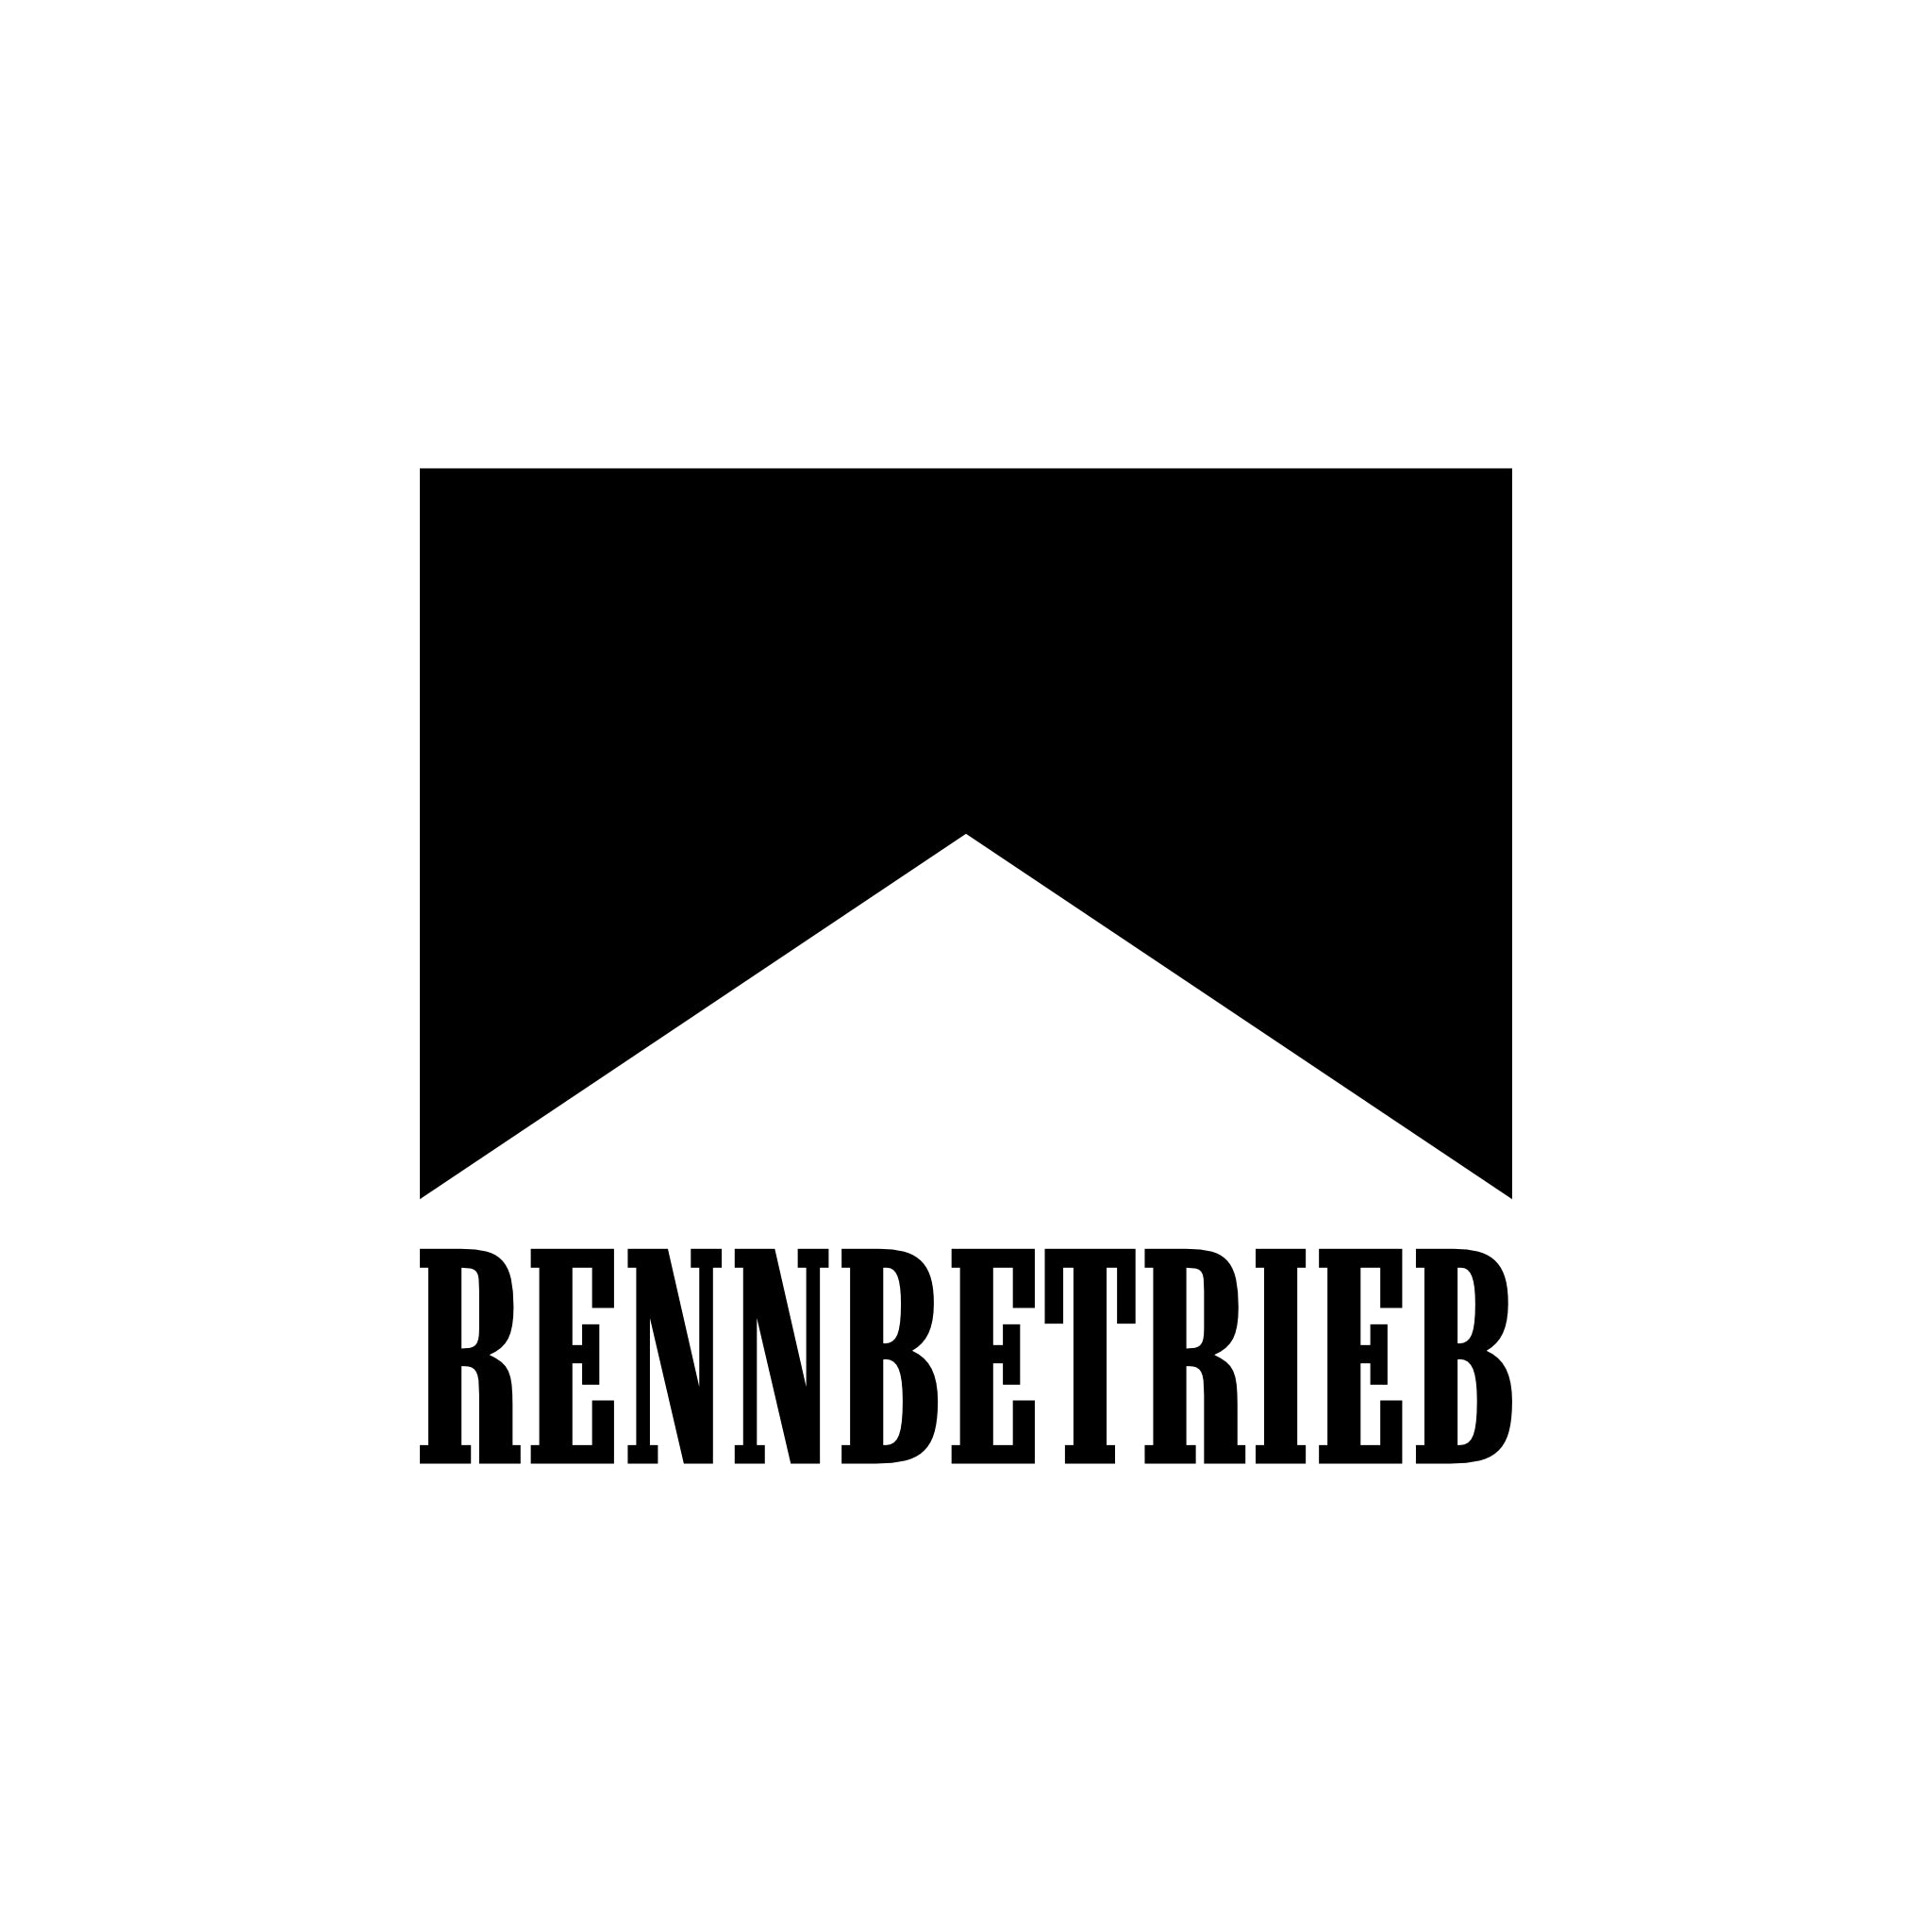 rennbetrieb marlboro logo look